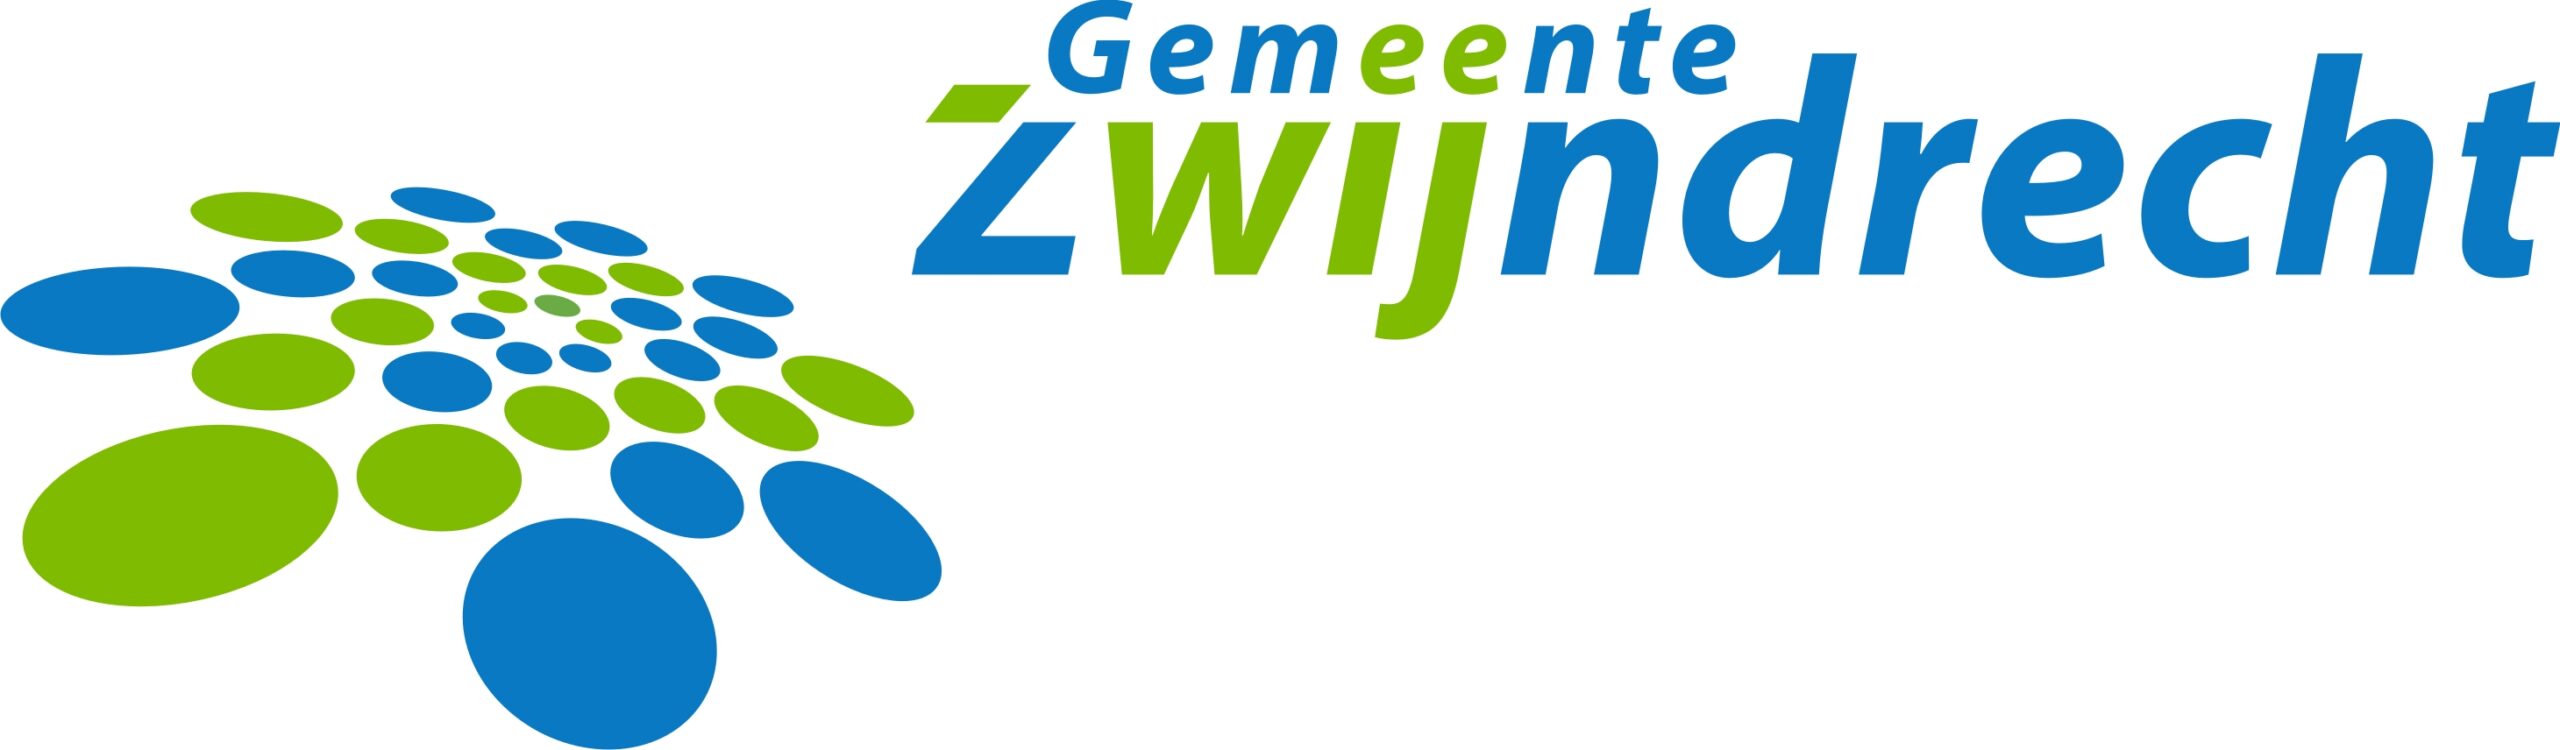 logo gemeente Zwijndrecht